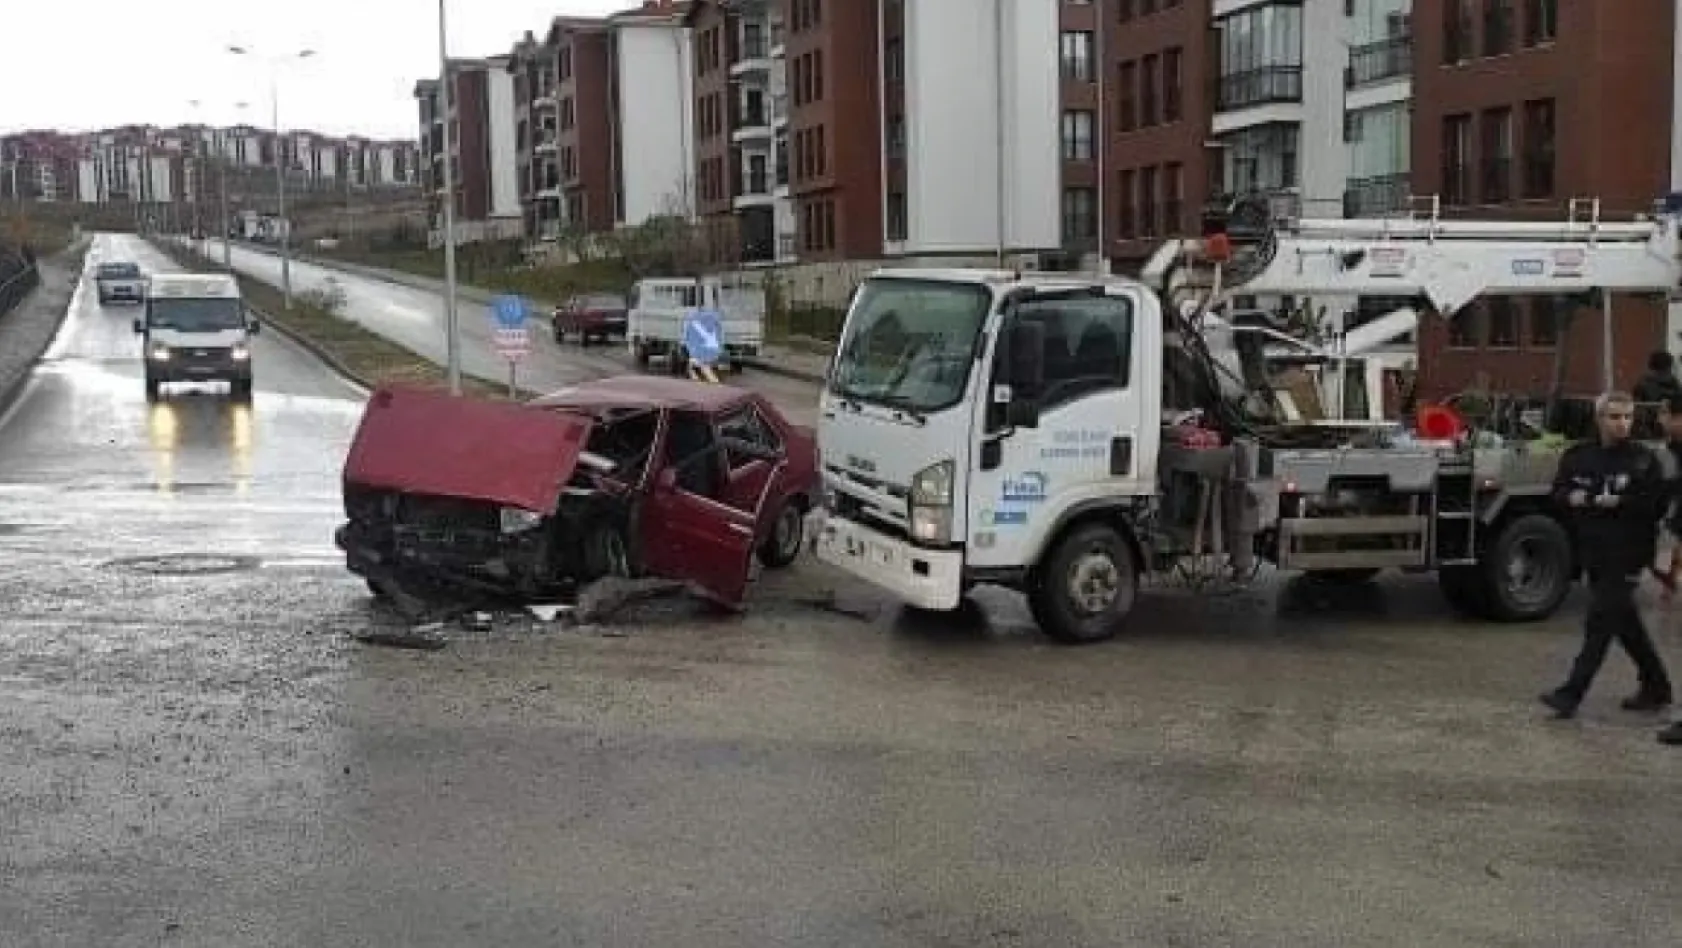 Elazığ'da elektrik arıza aracı ile otomobil çarpıştı: 4 yaralı